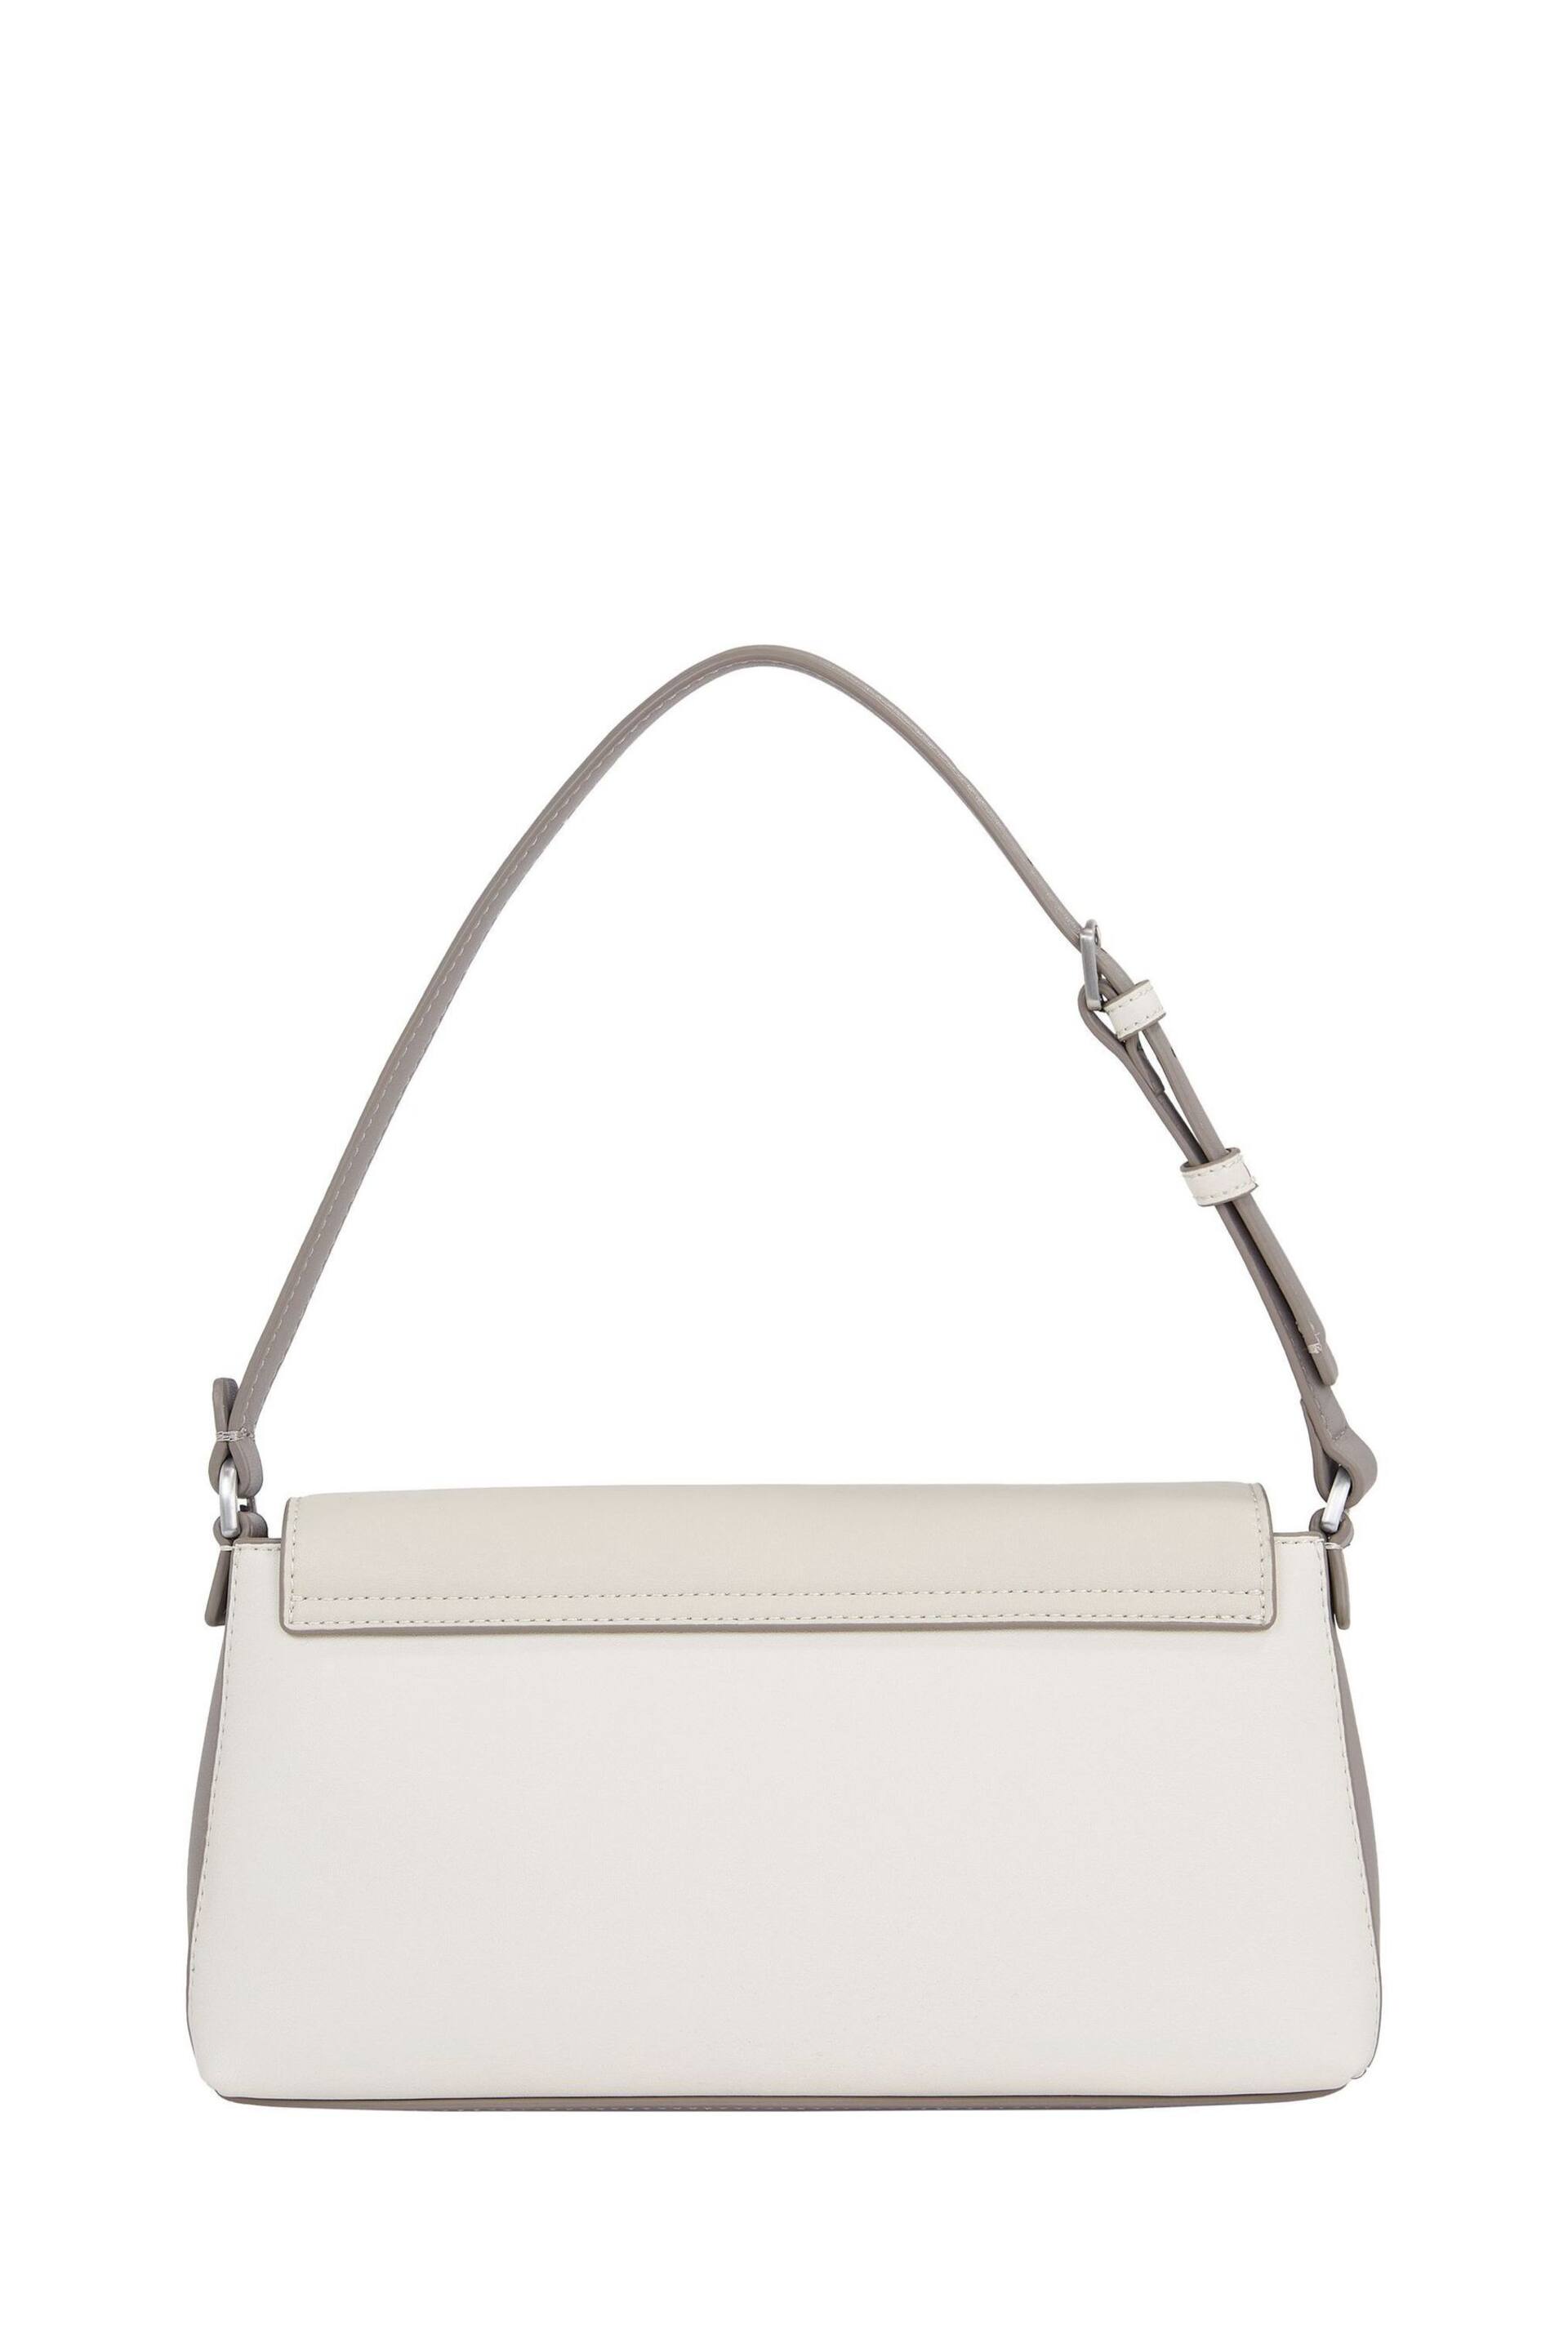 Calvin Klein White Must Shoulder Bag - Image 2 of 4